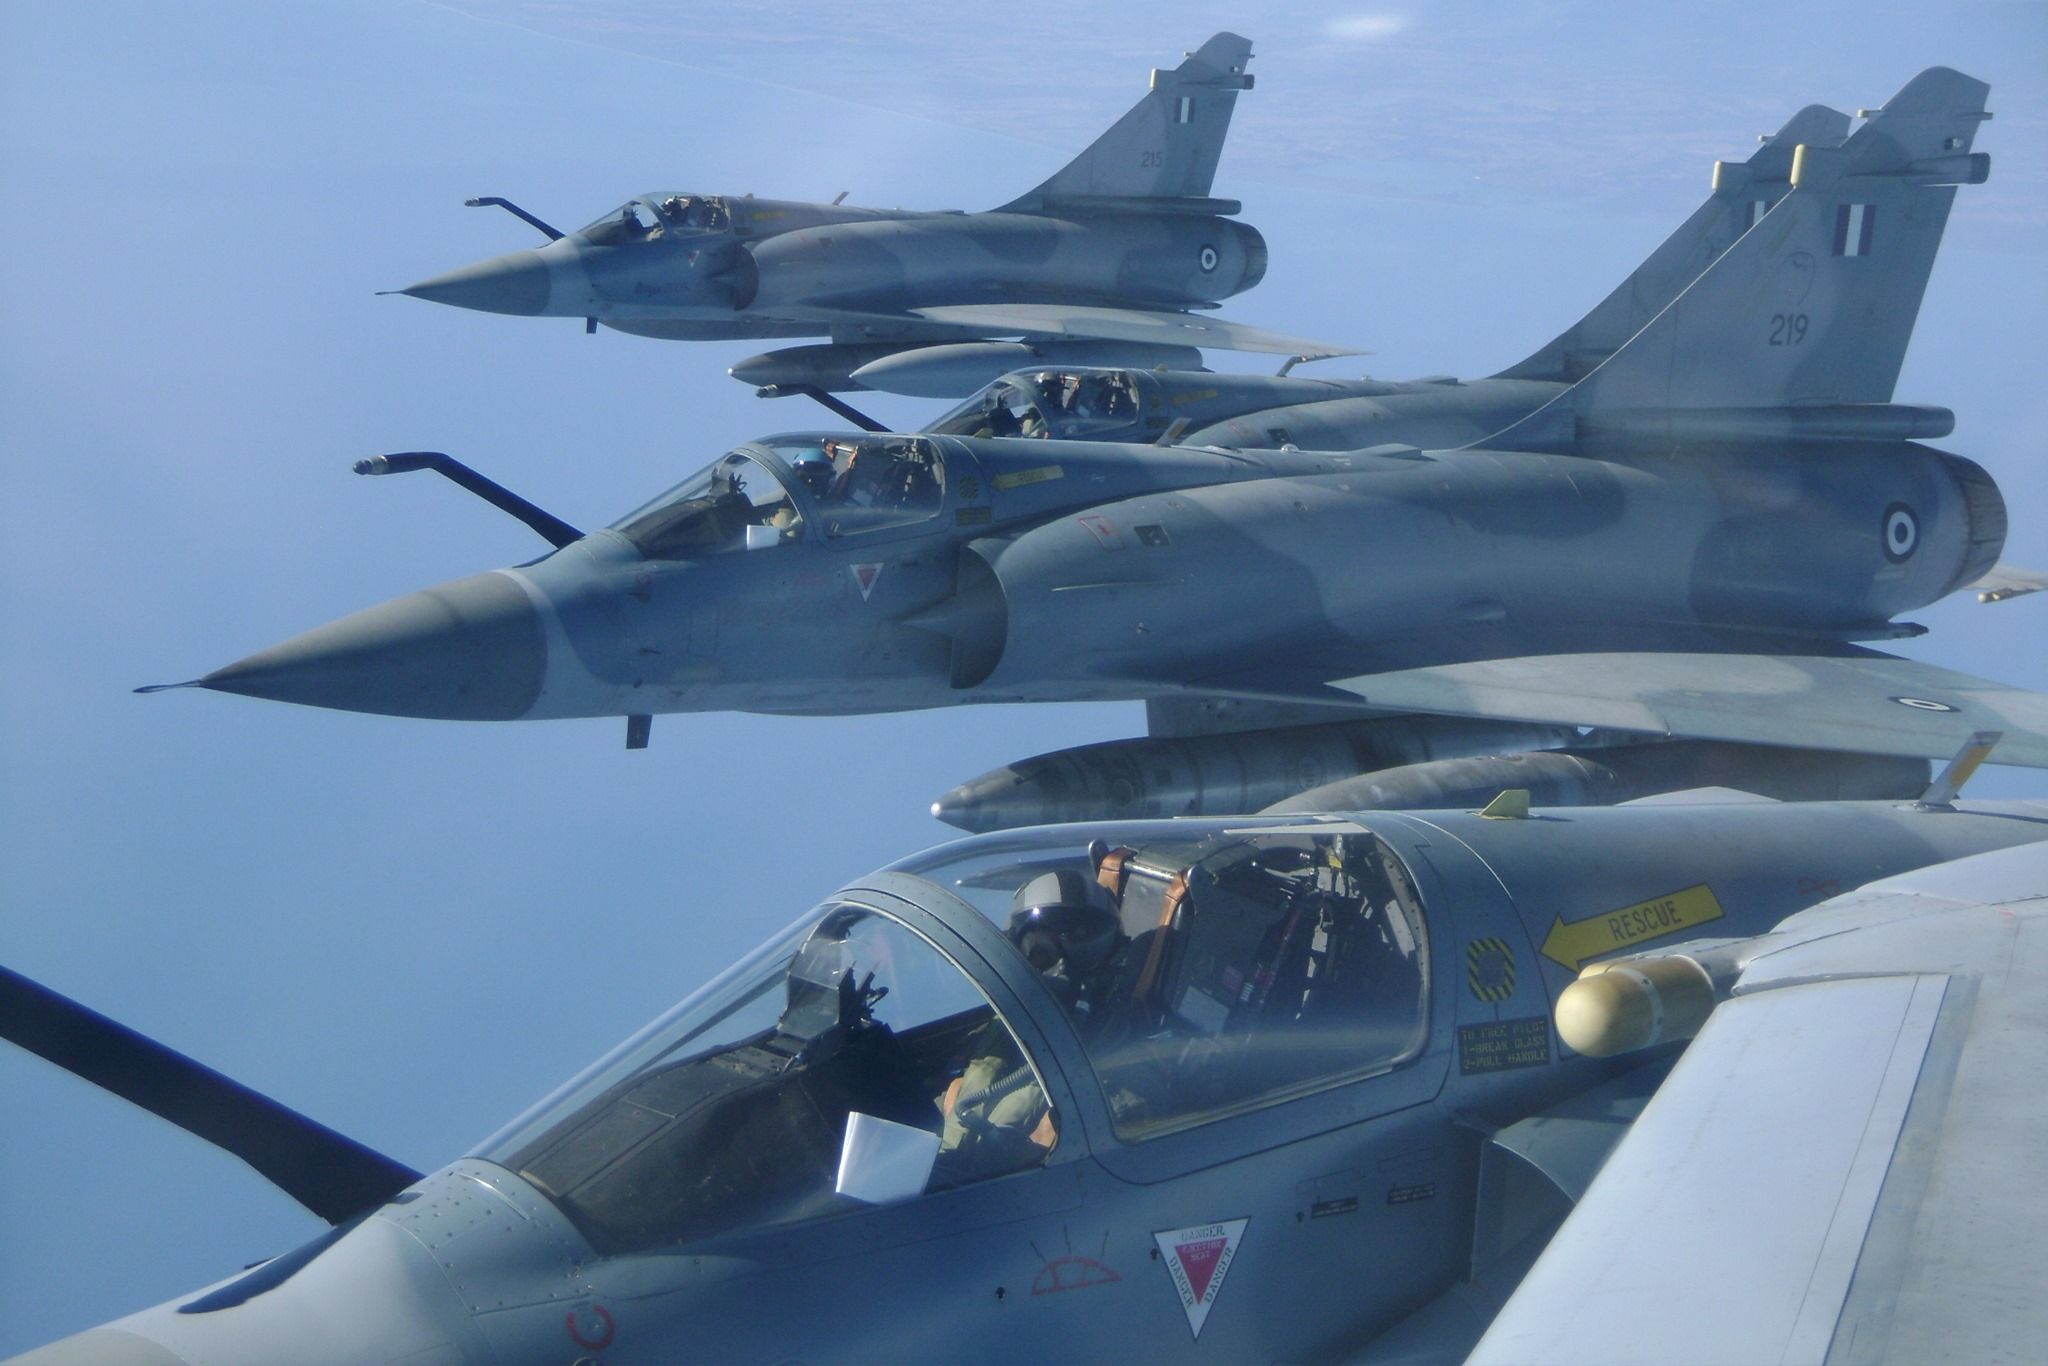 Μετά από 10 χρόνια υπογράφηκε προμήθεια ανταλλακτικών για τα Mirage-2000 της ΠΑ